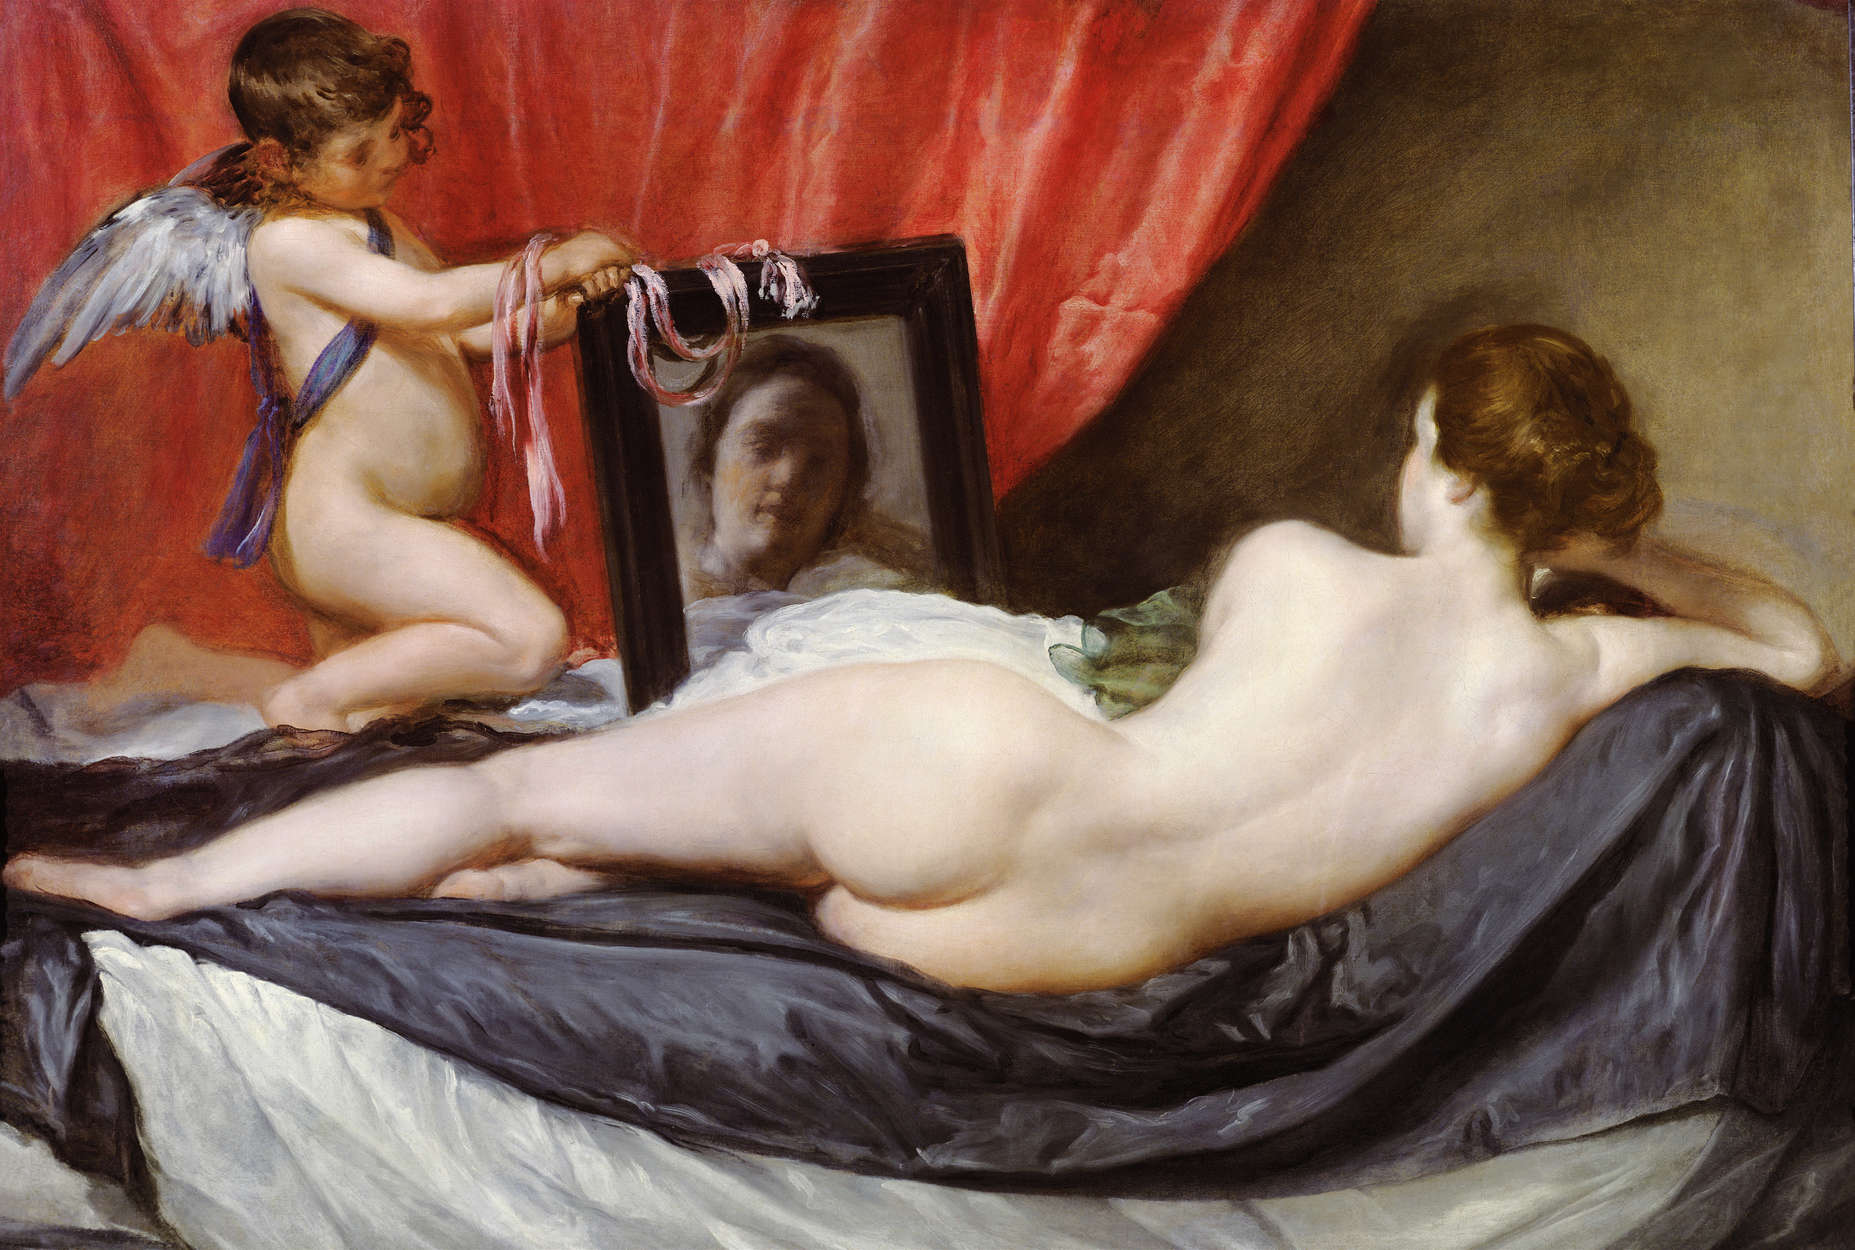             Muurschildering "Venus voor de spiegel" door Diego Velazquez
        